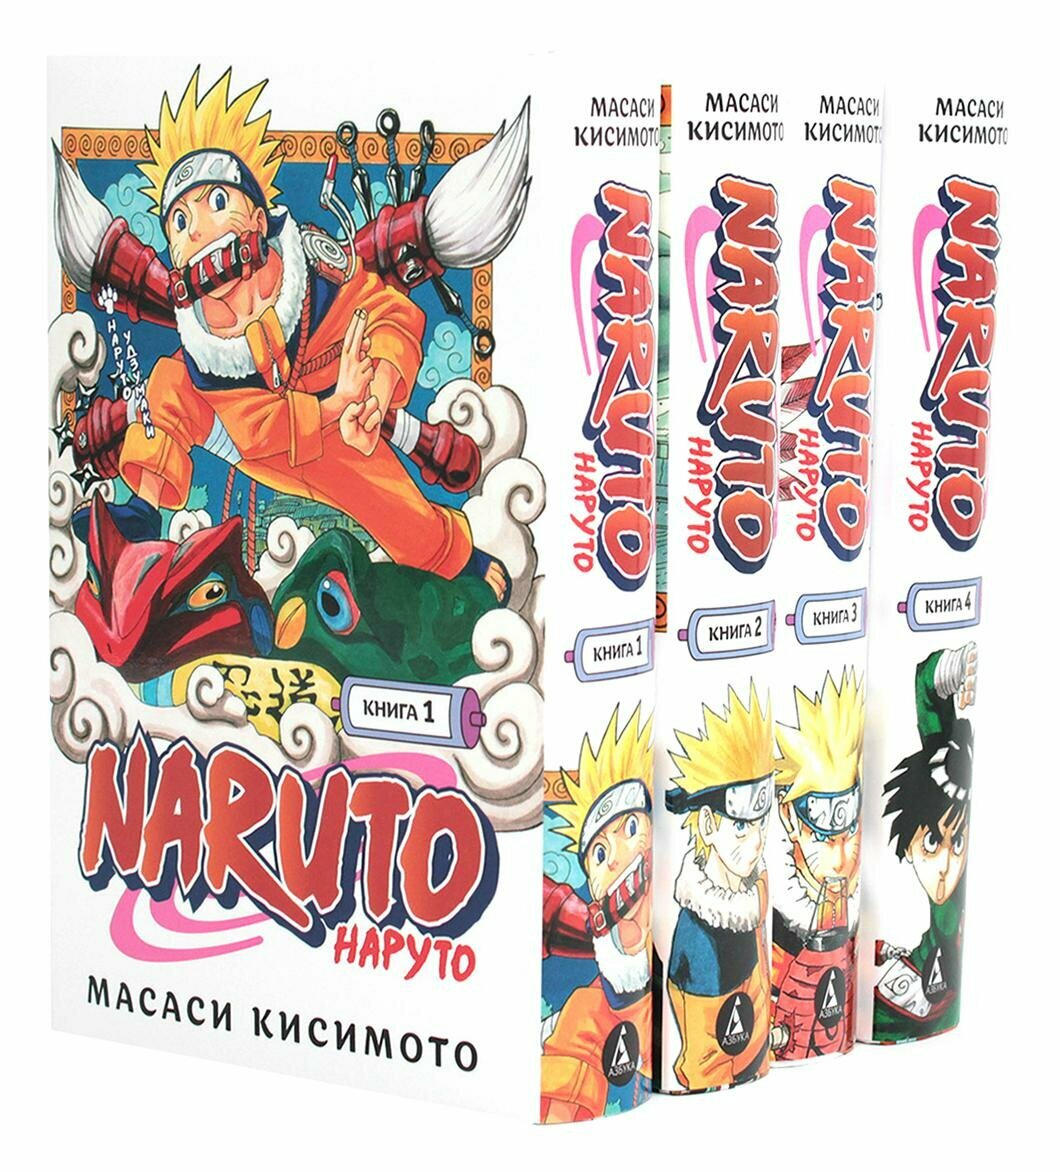 Naruto. Наруто: Кн. 1 - 4: манга. Кисимото М. Азбука